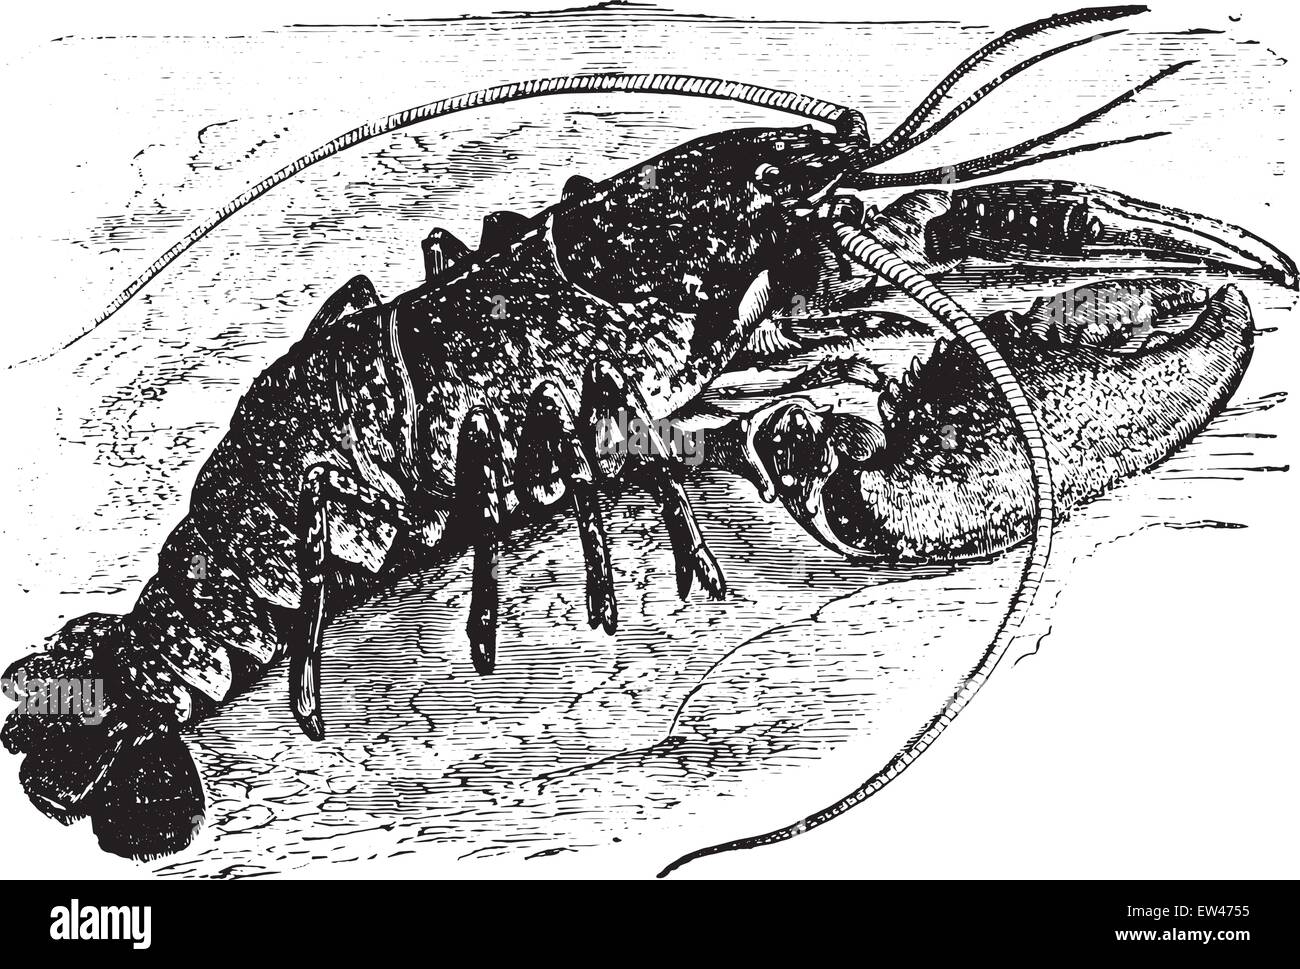 Lobster, vintage engraved illustration. Stock Vector